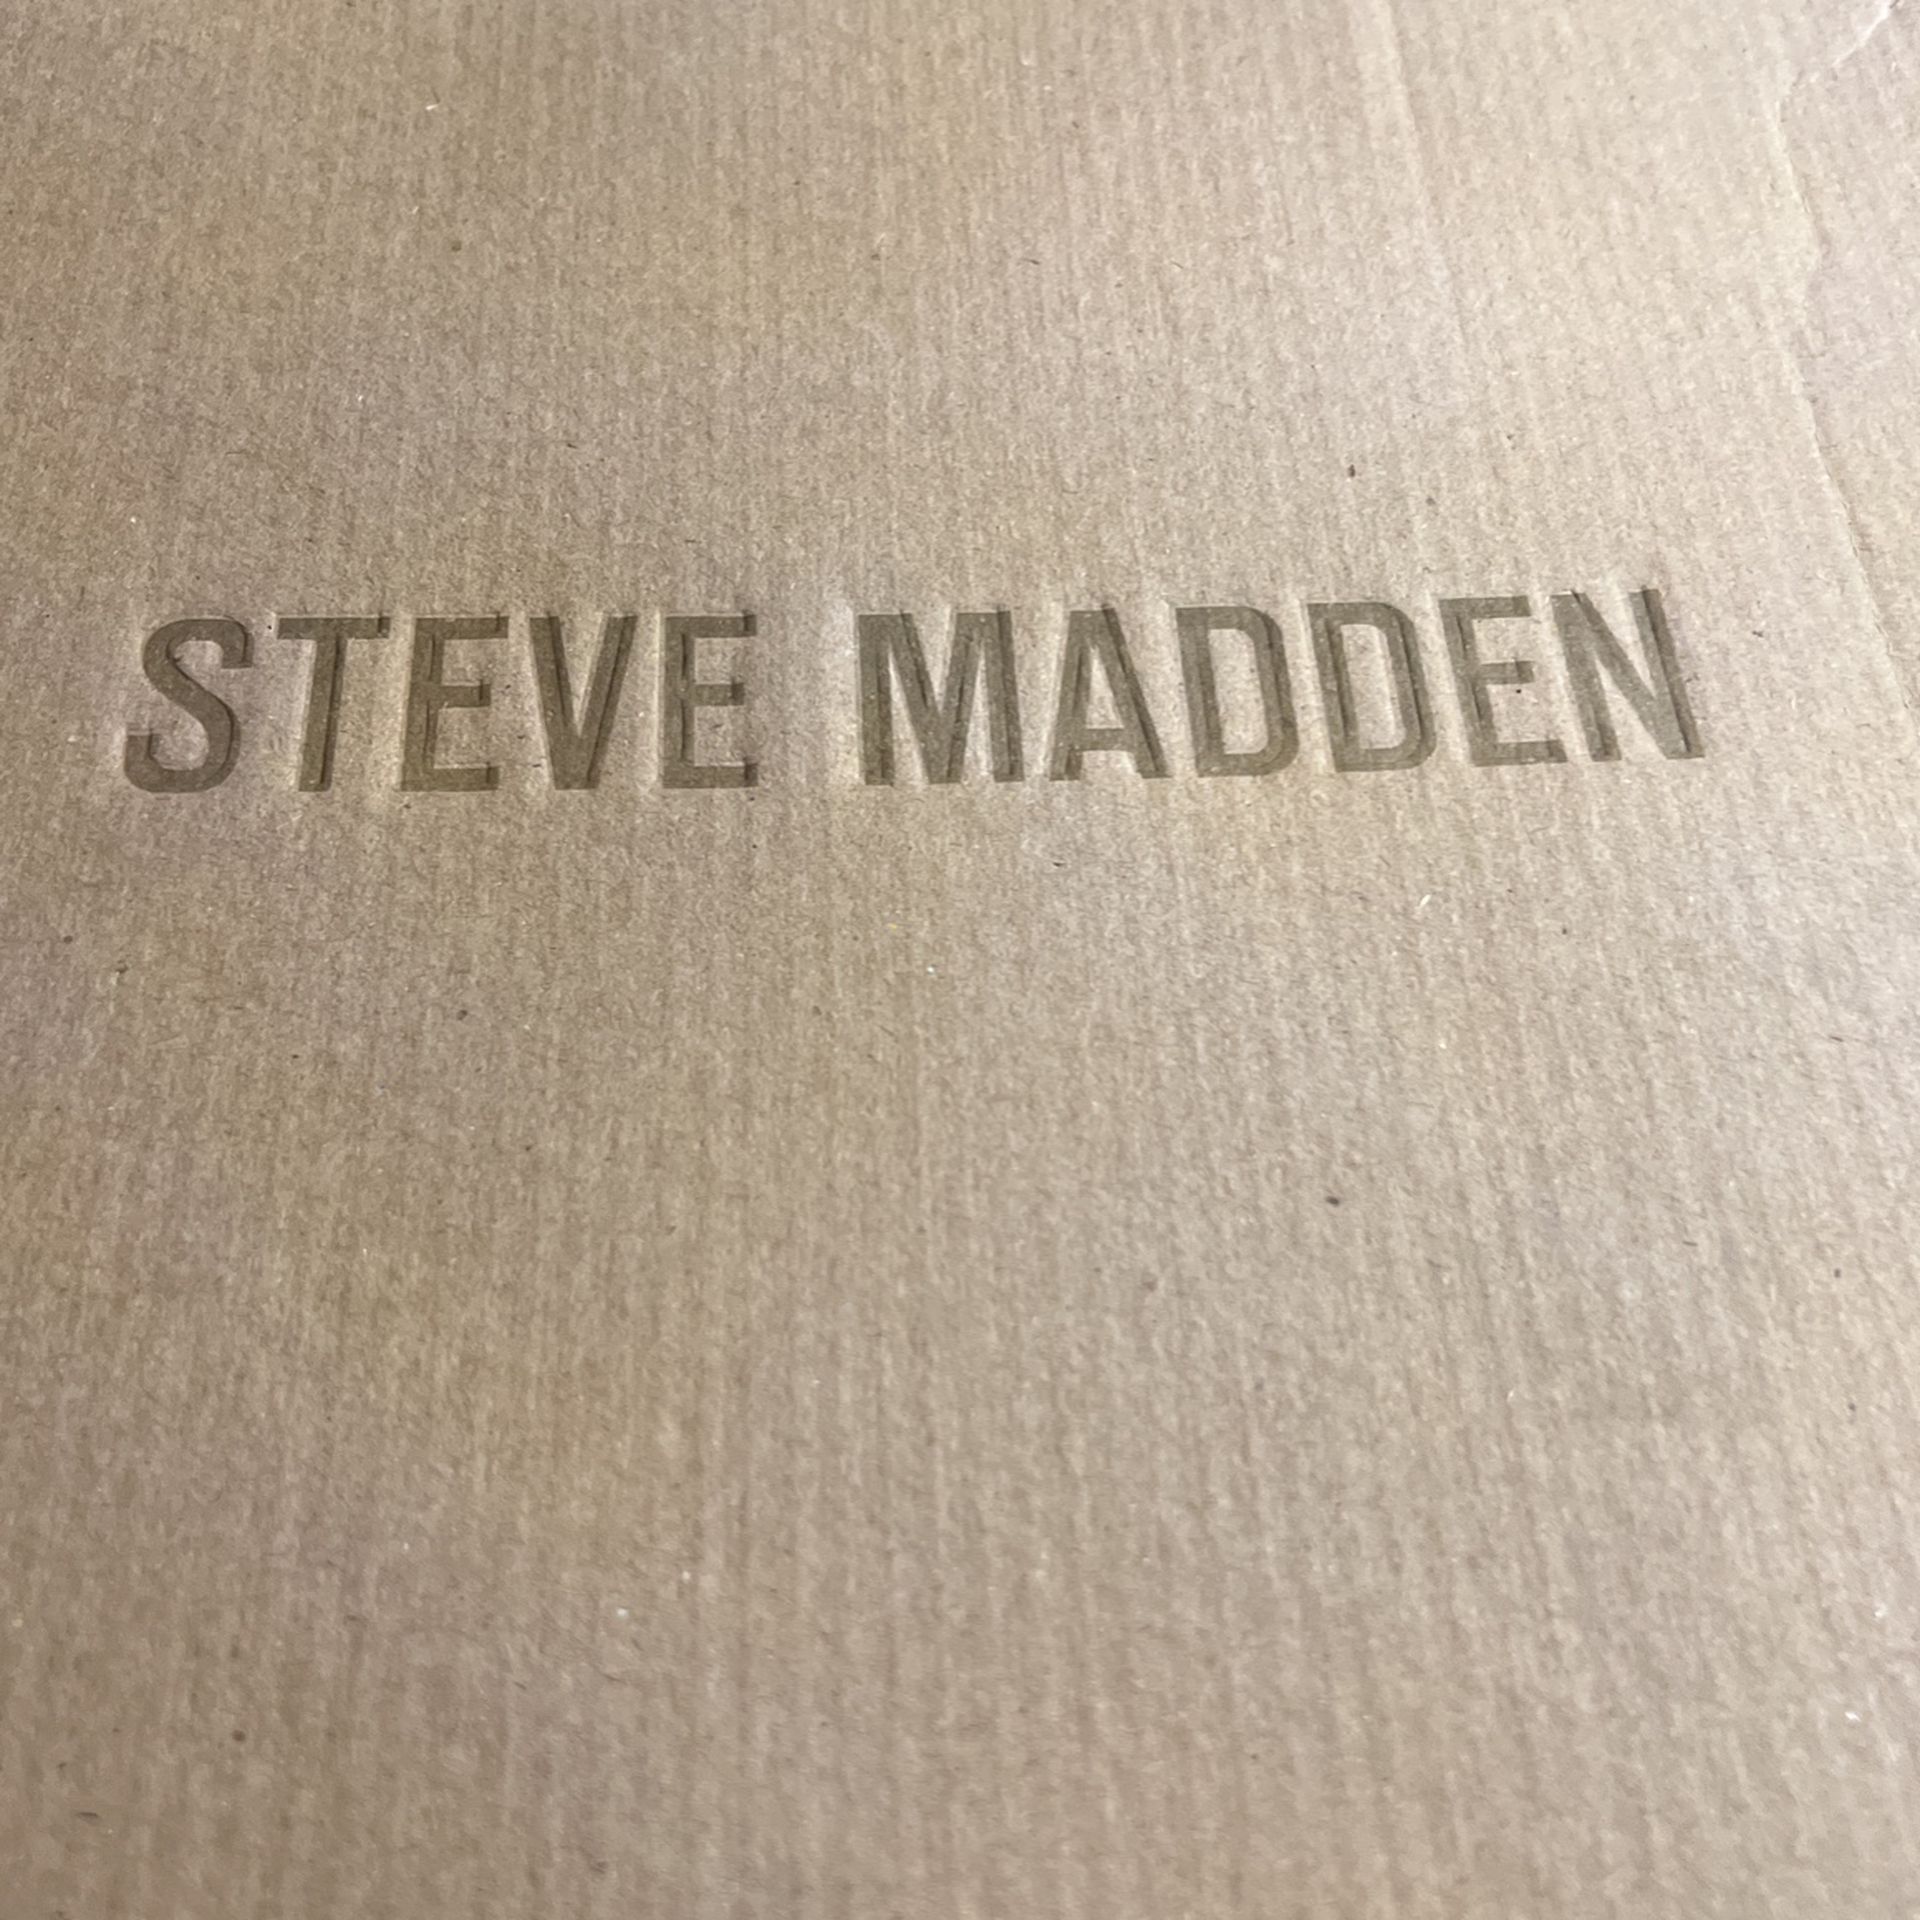 Steve Madden boots